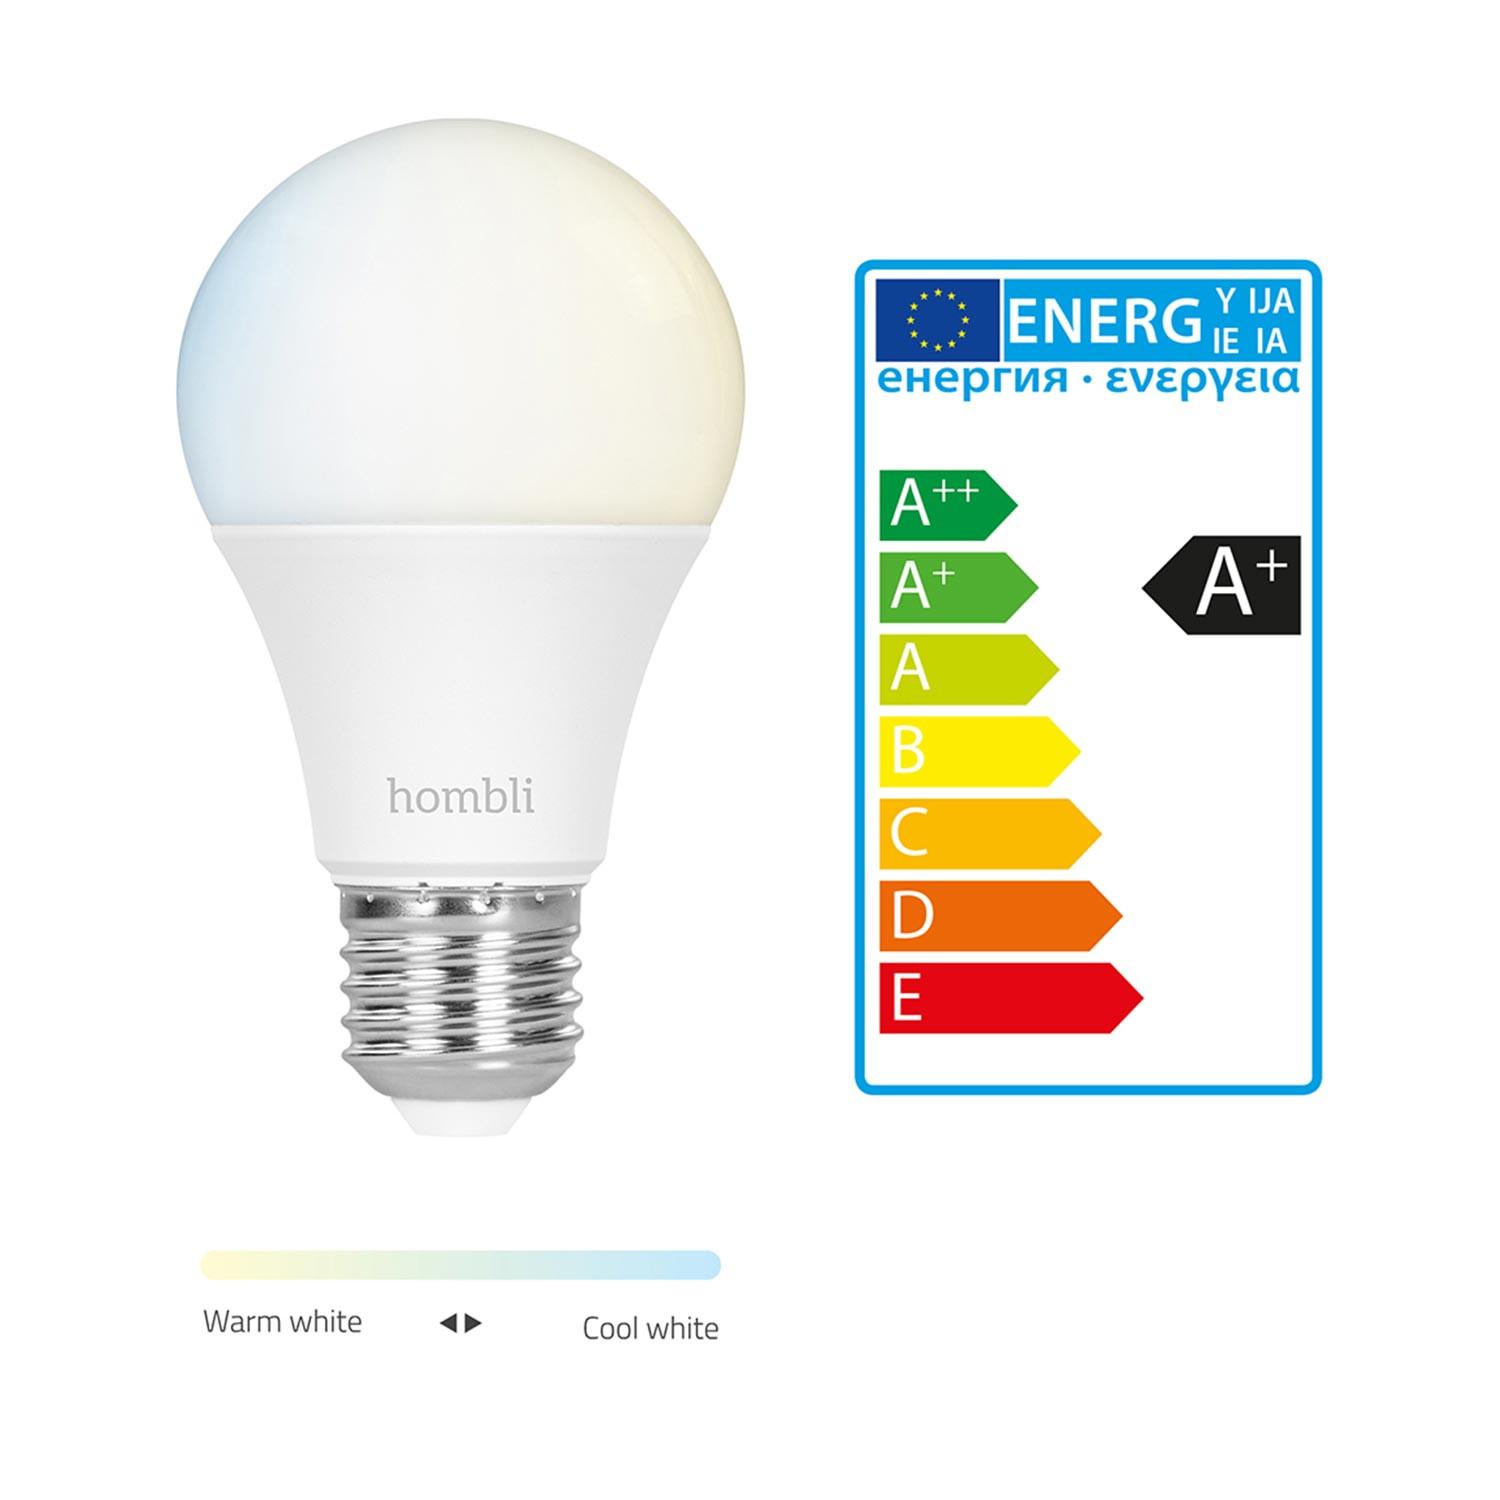 Hombli Smart Bulb E27 White-Lampe 2er-Set + gratis Smart Bulb E27 White 2er-Set - Energieeffizienz